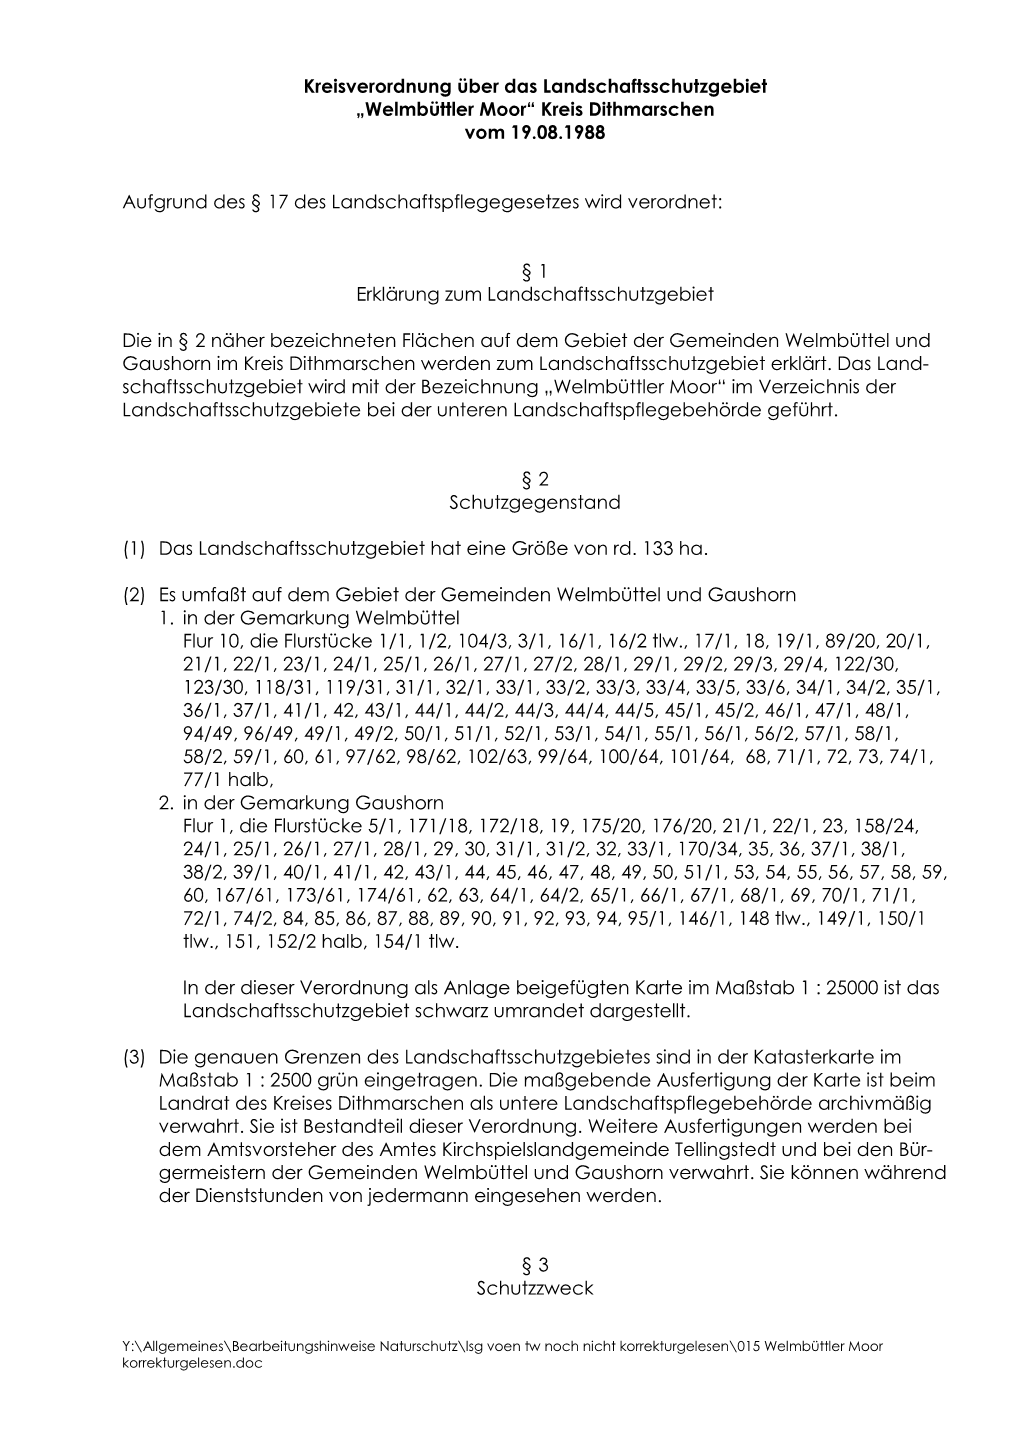 Kreisverordnung Über Das Landschaftsschutzgebiet „Welmbüttler Moor“ Kreis Dithmarschen Vom 19.08.1988